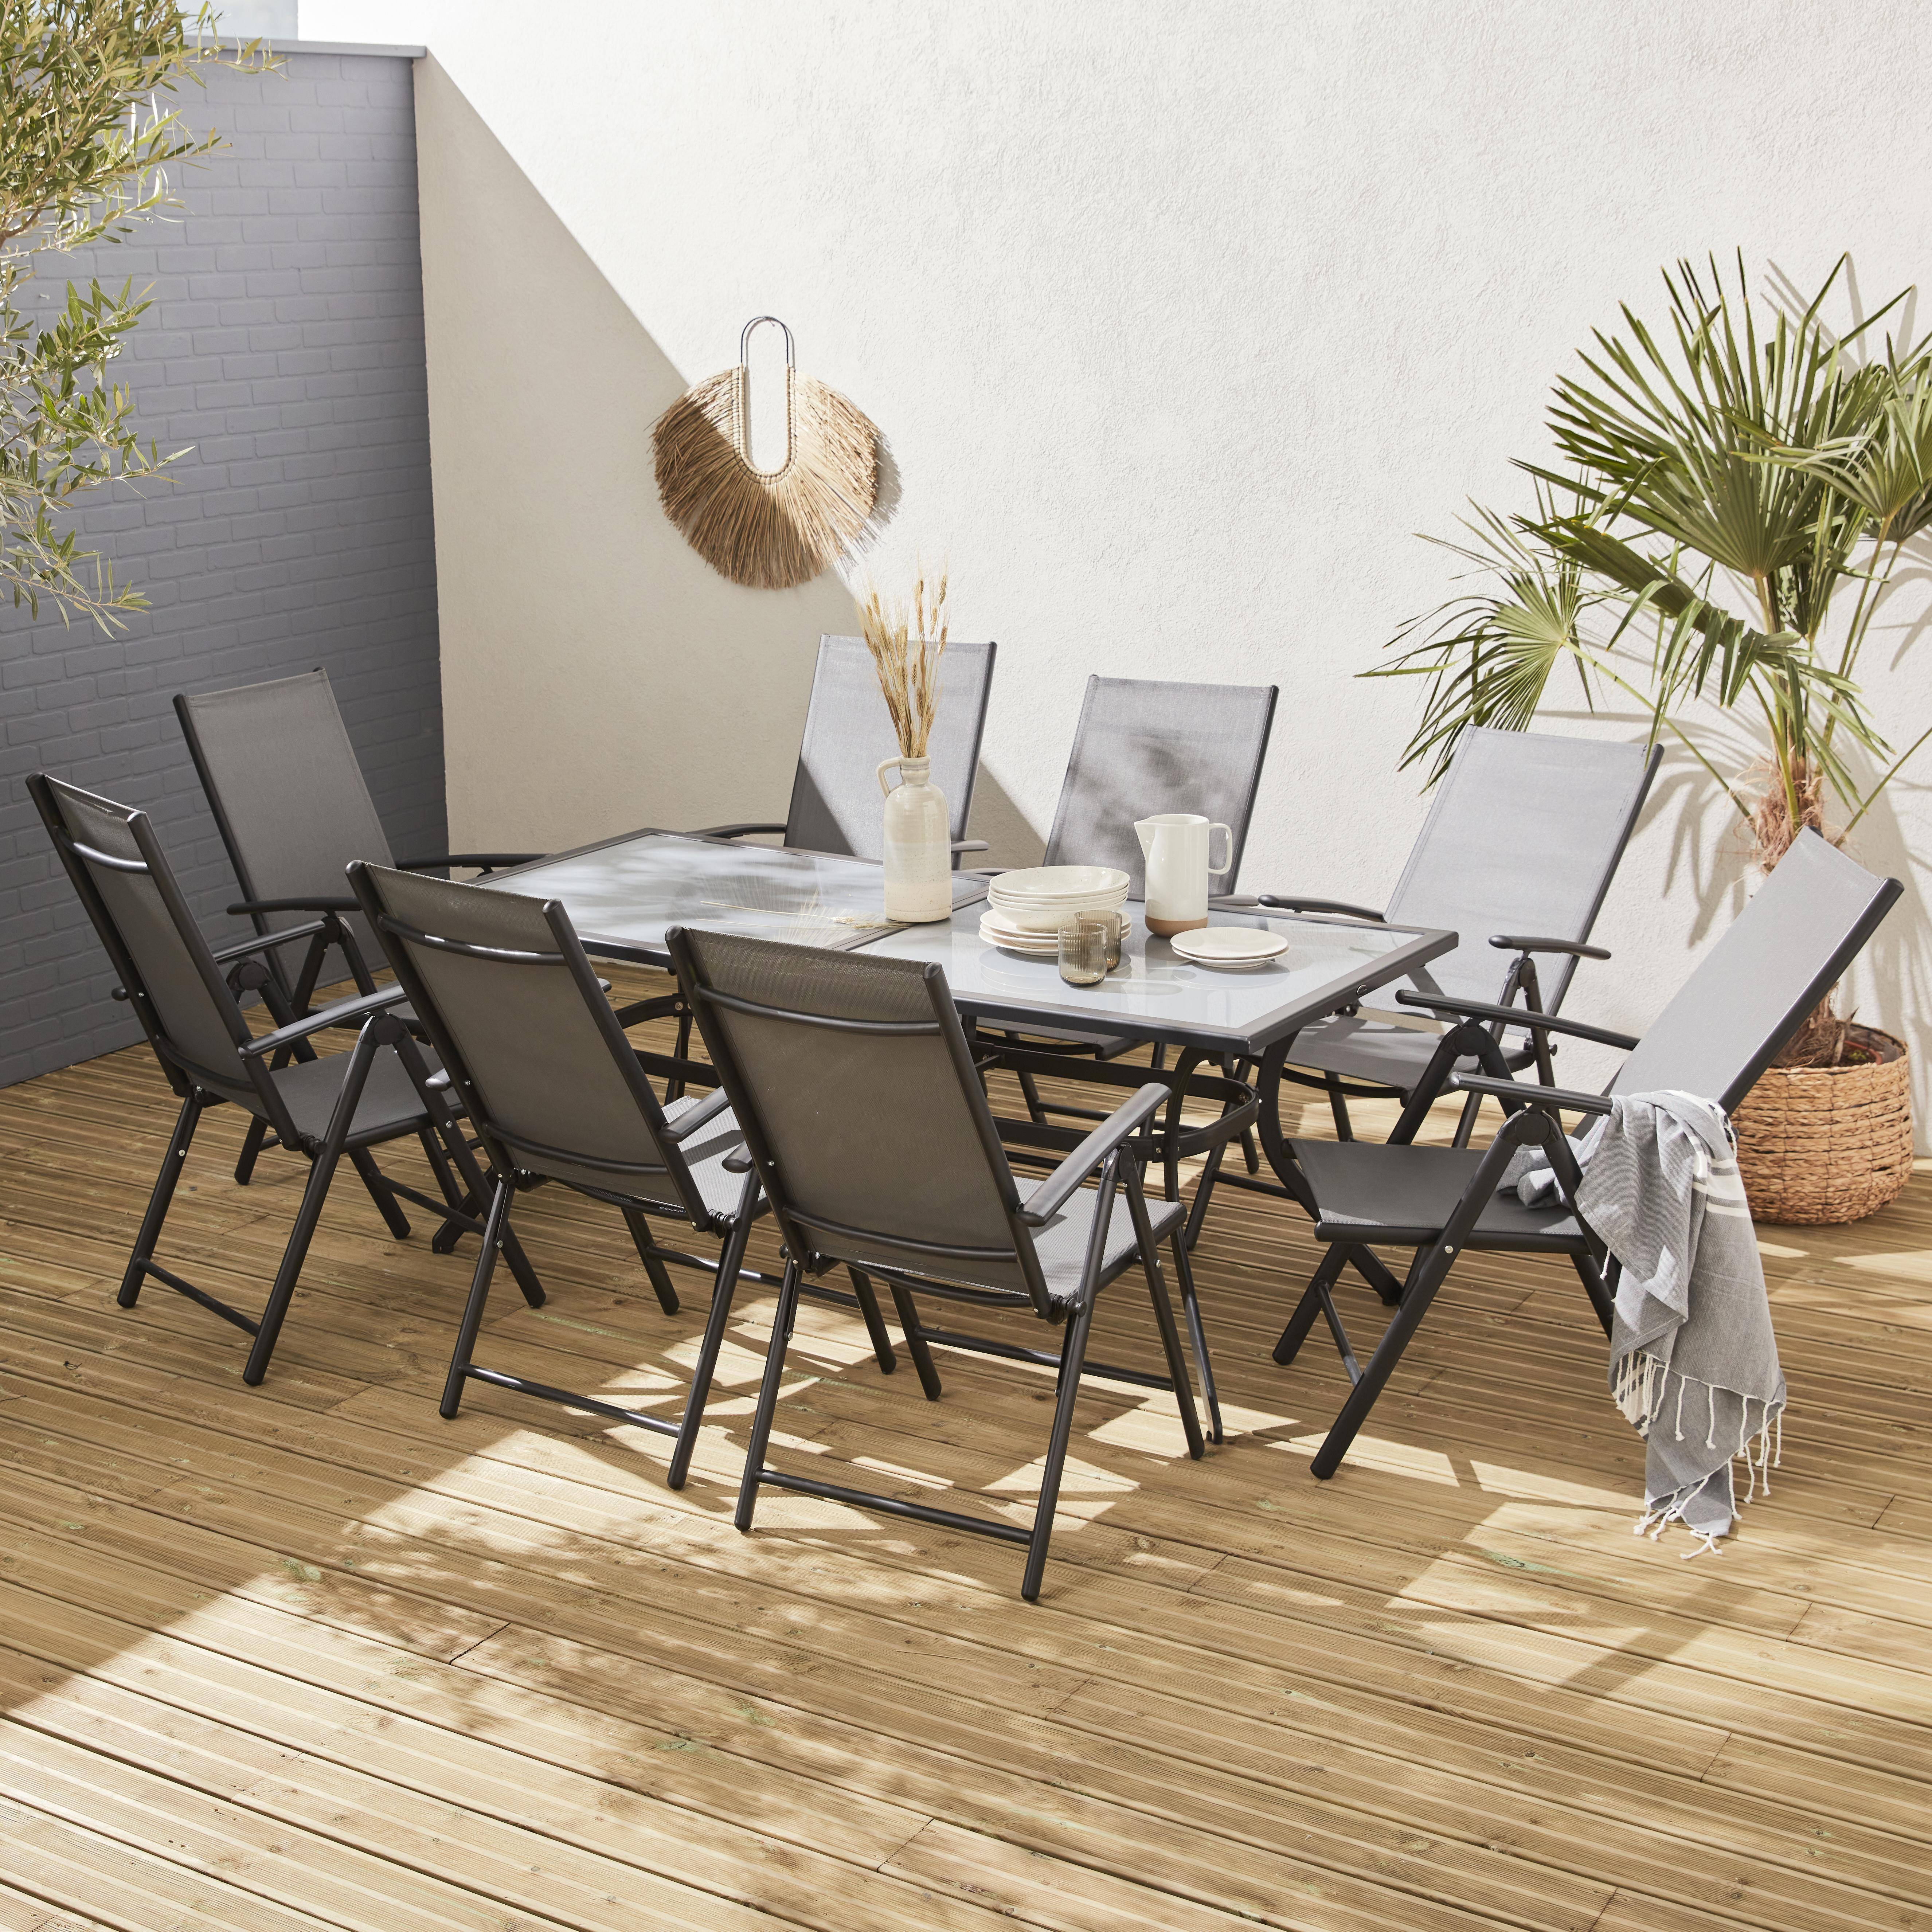 Salon de jardin en aluminium et textilène - Naevia - Gris, Anthracite - 8 places - 1 grande table rectangulaire, 8 fauteuils pliables Photo1